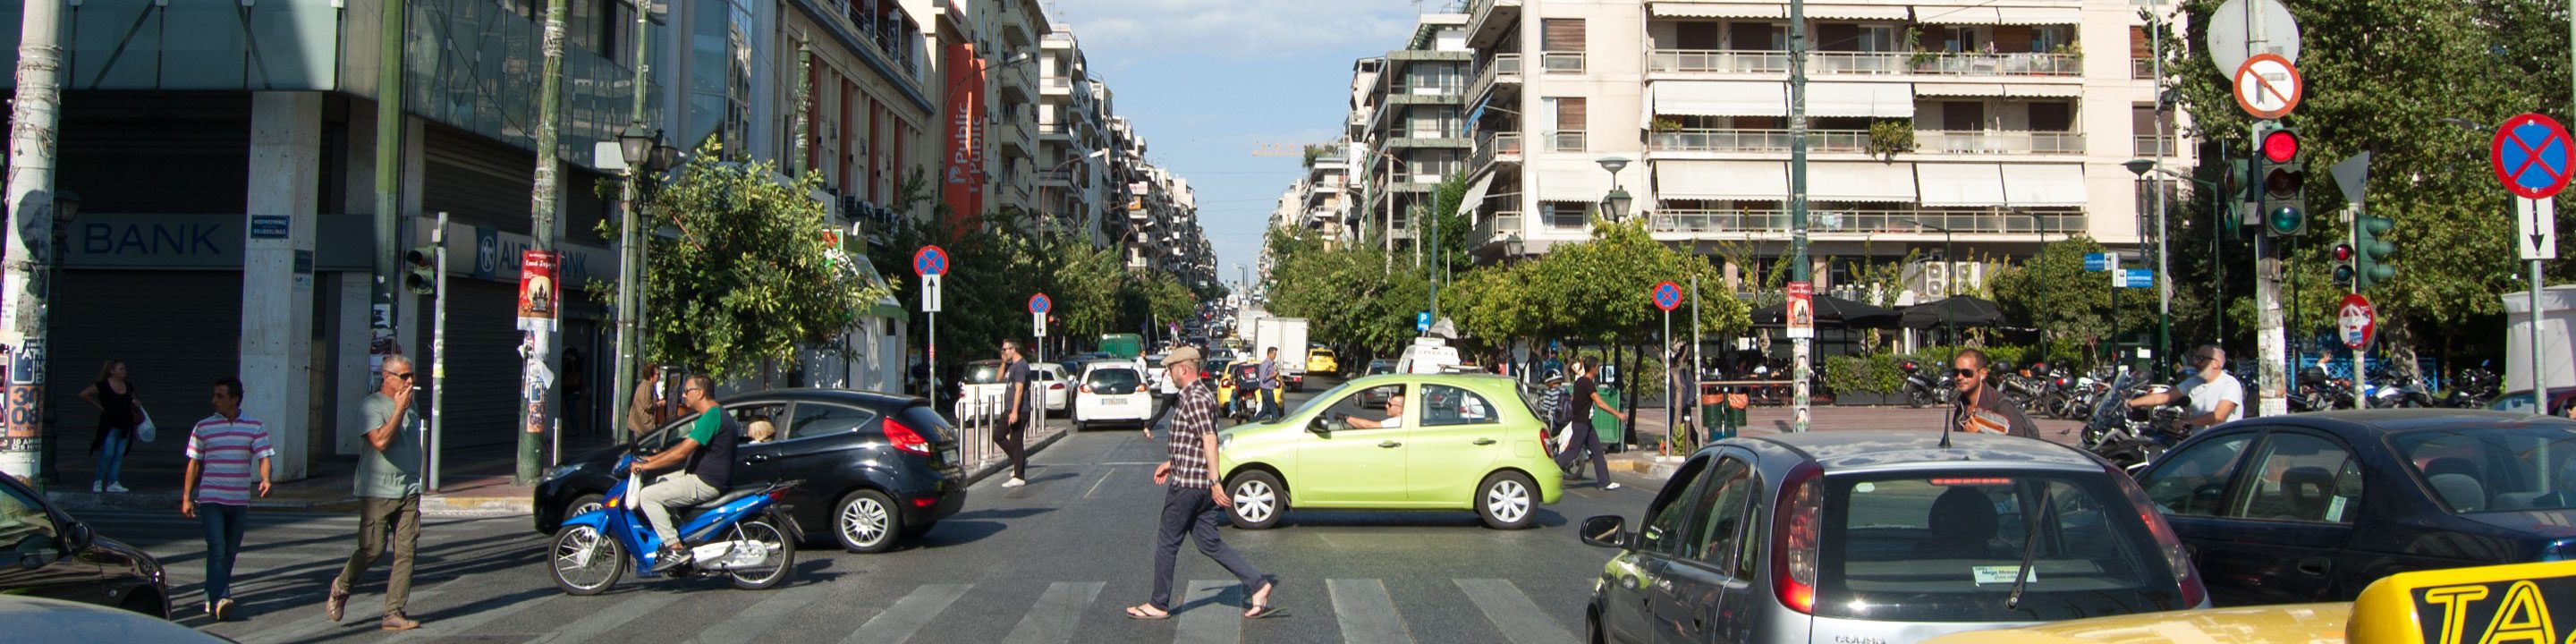 Grigoriou Lambraki Street in Piraeus